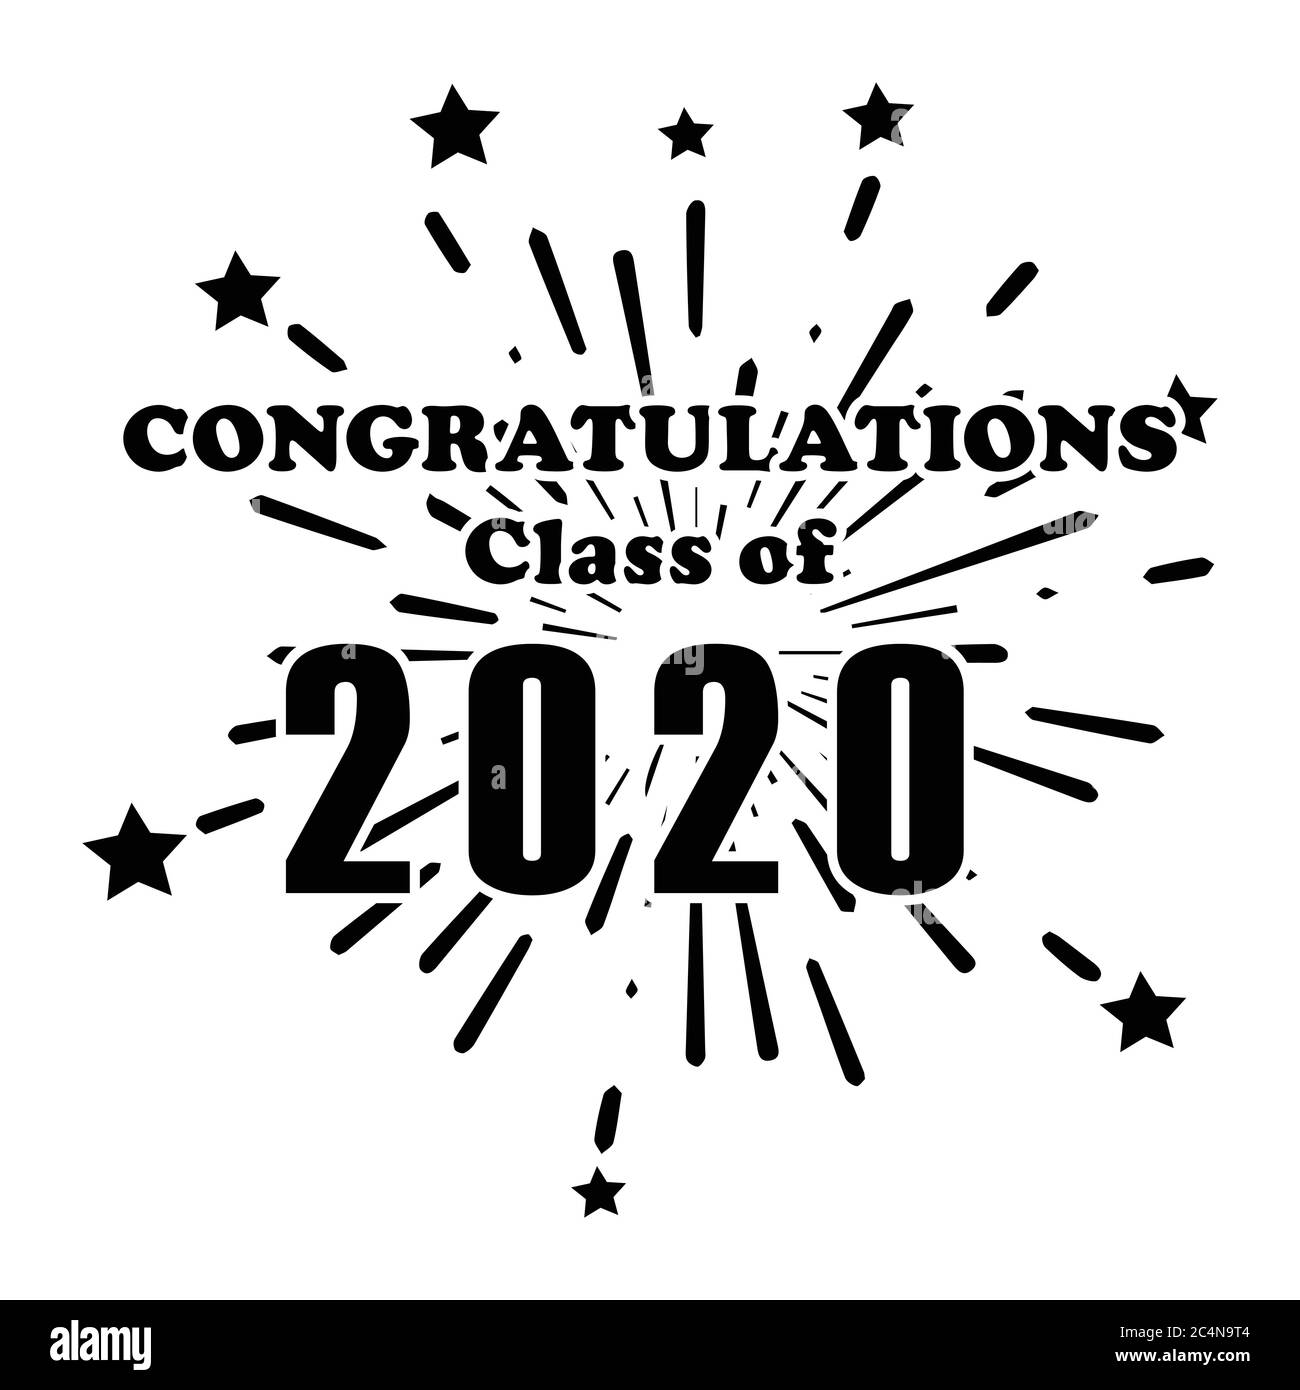 Glückwünsche Klasse von 2020 Feuerwerk Explosion Sterne Grüße Text Wort Symbol. Tag des Beginns Abschluss High School College University Diplom De Stock Vektor